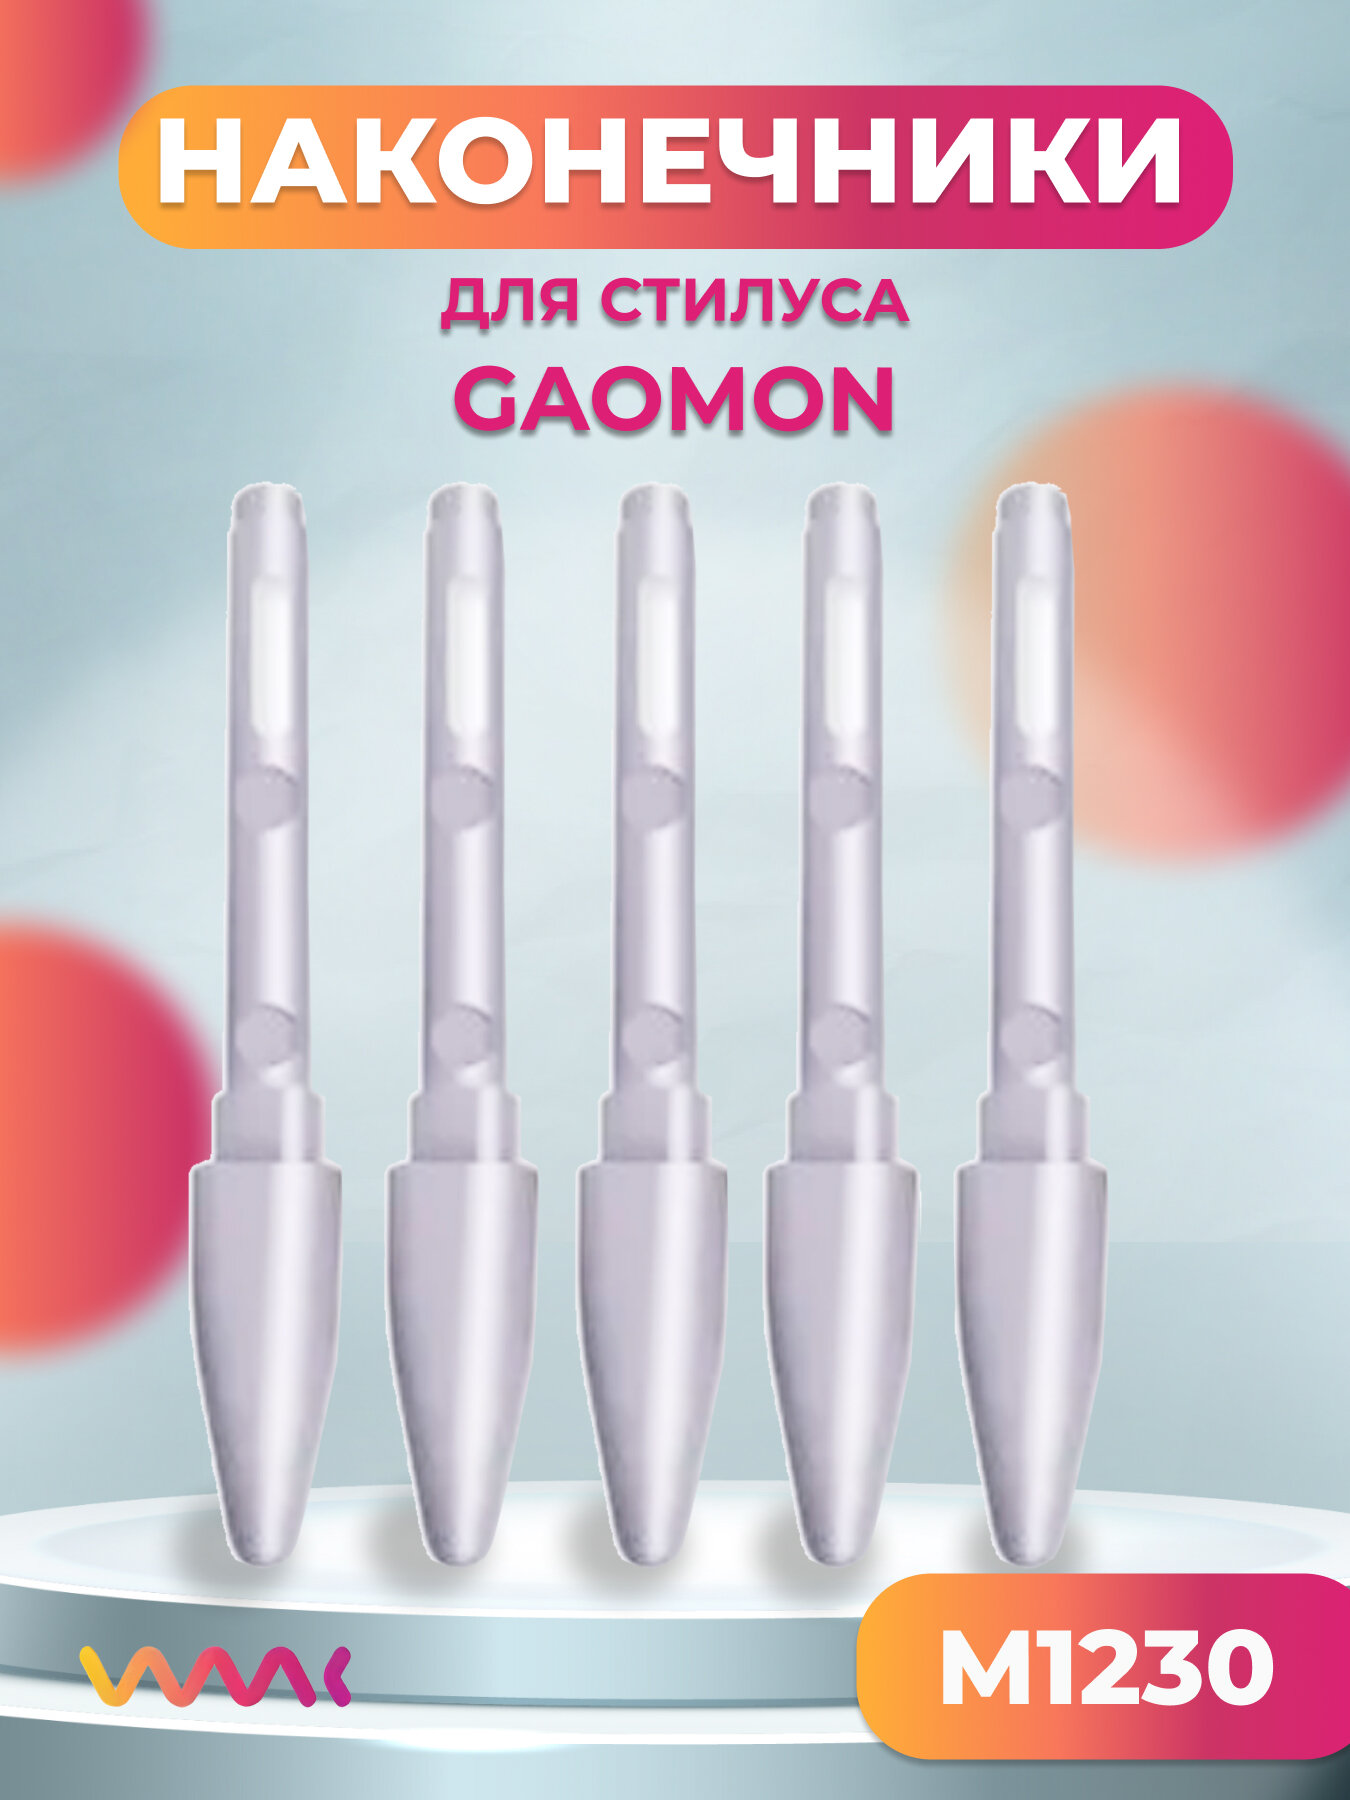 Набор сменных наконечников для пера Gaomon M1230, 5 шт.